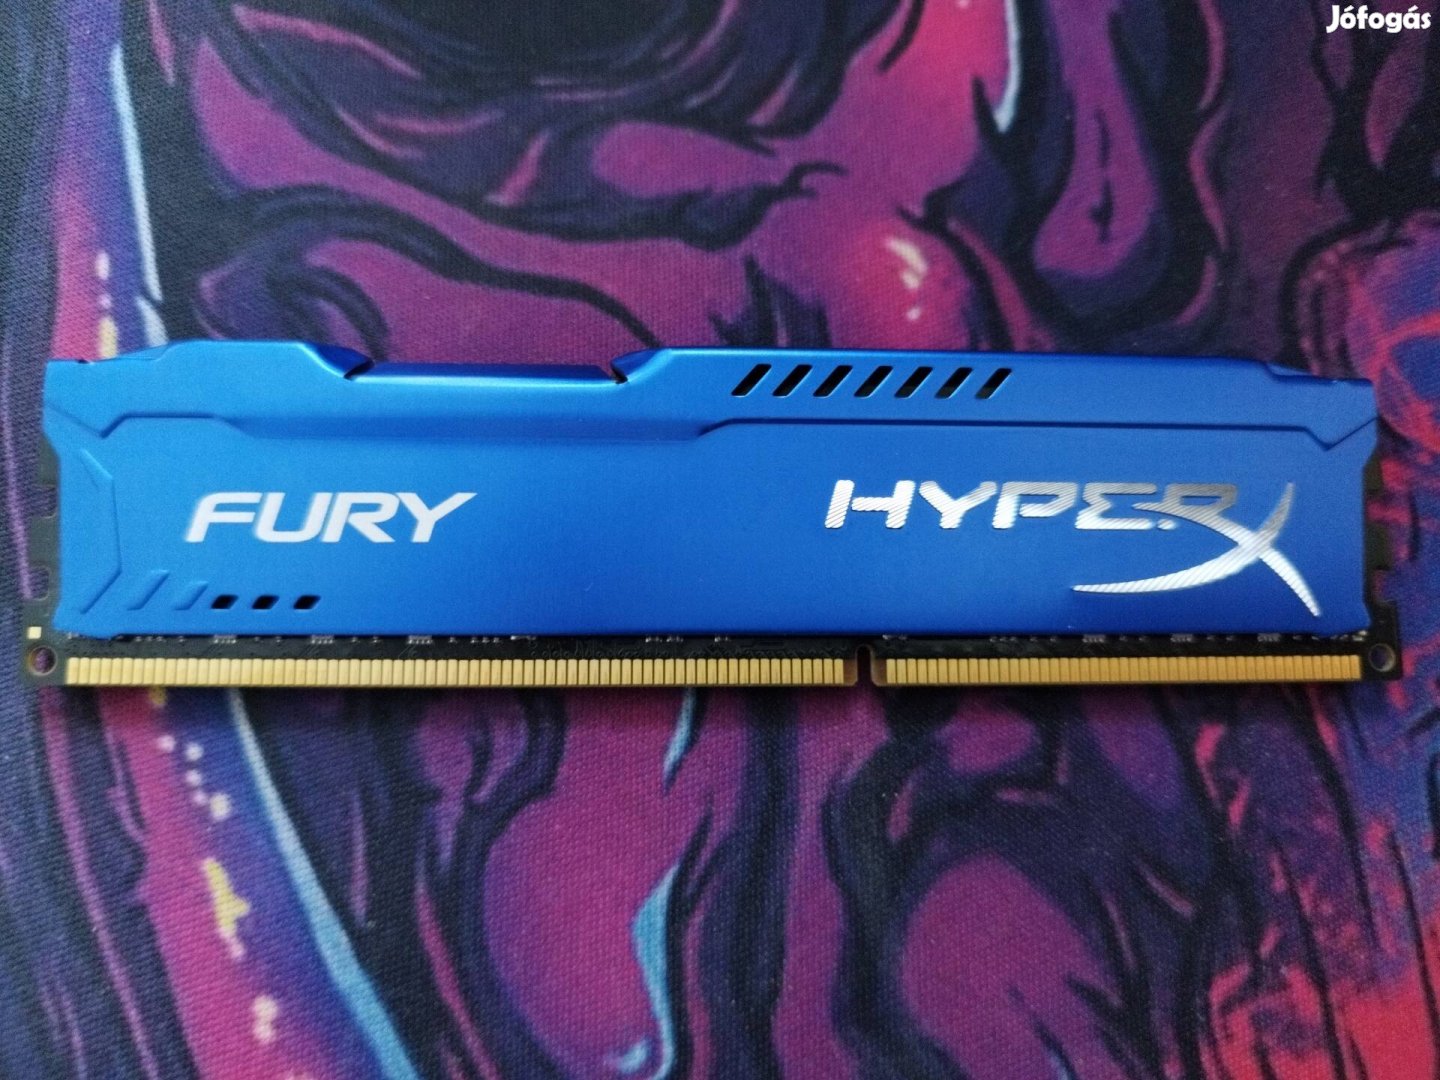 Hyperx Fury ddr3 8Gb ram 1db